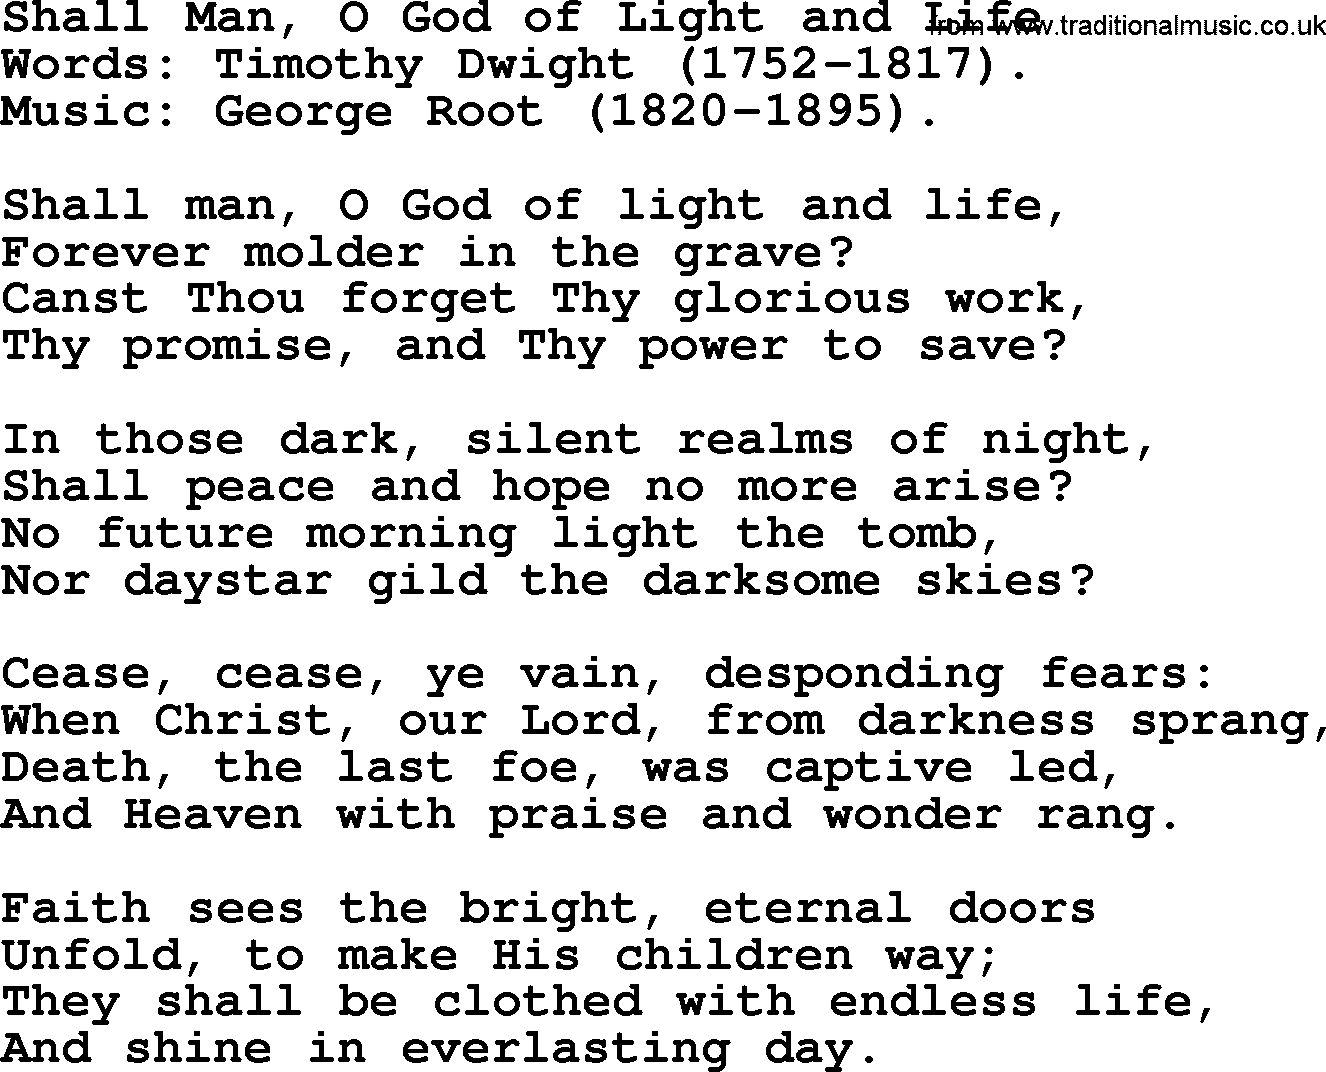 100+ Christian Funeral Hymns collection, Hymn: Shall Man, O God of Light and Life, lyrics and PDF